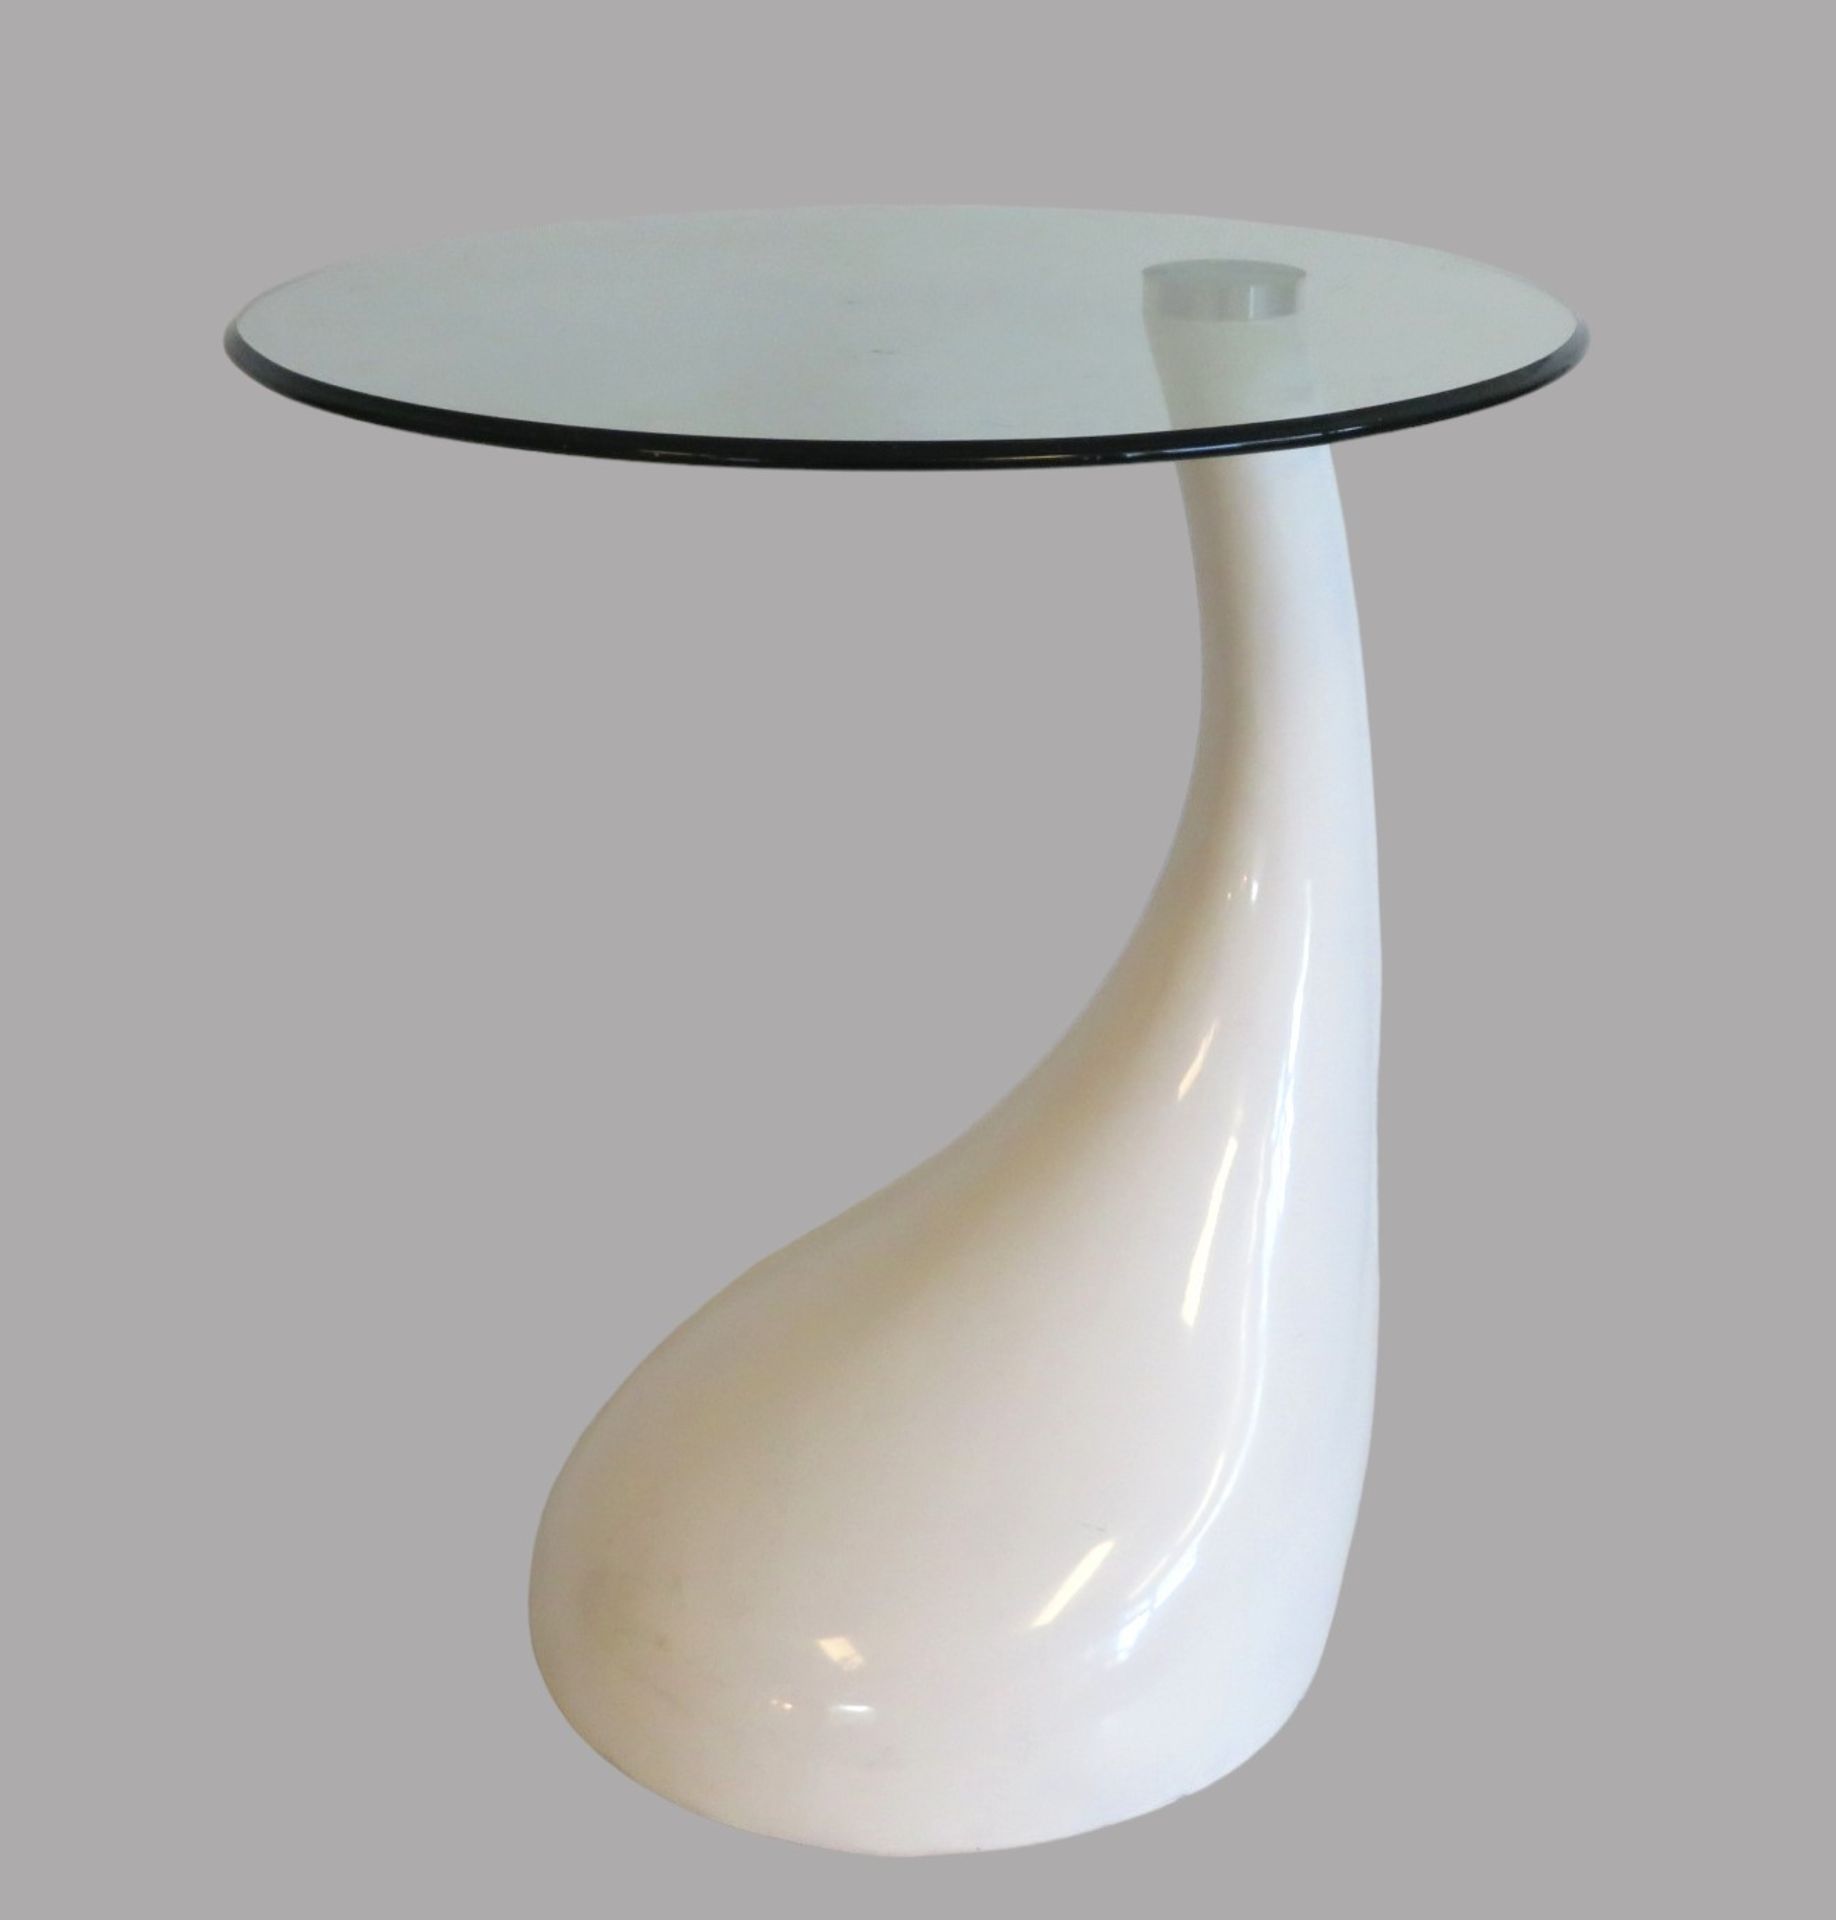 Designer Tisch, wohl Colani, weiß gelackter Fuss mit Glasplatte, Glas mit kleineren Gebrauchsspuren